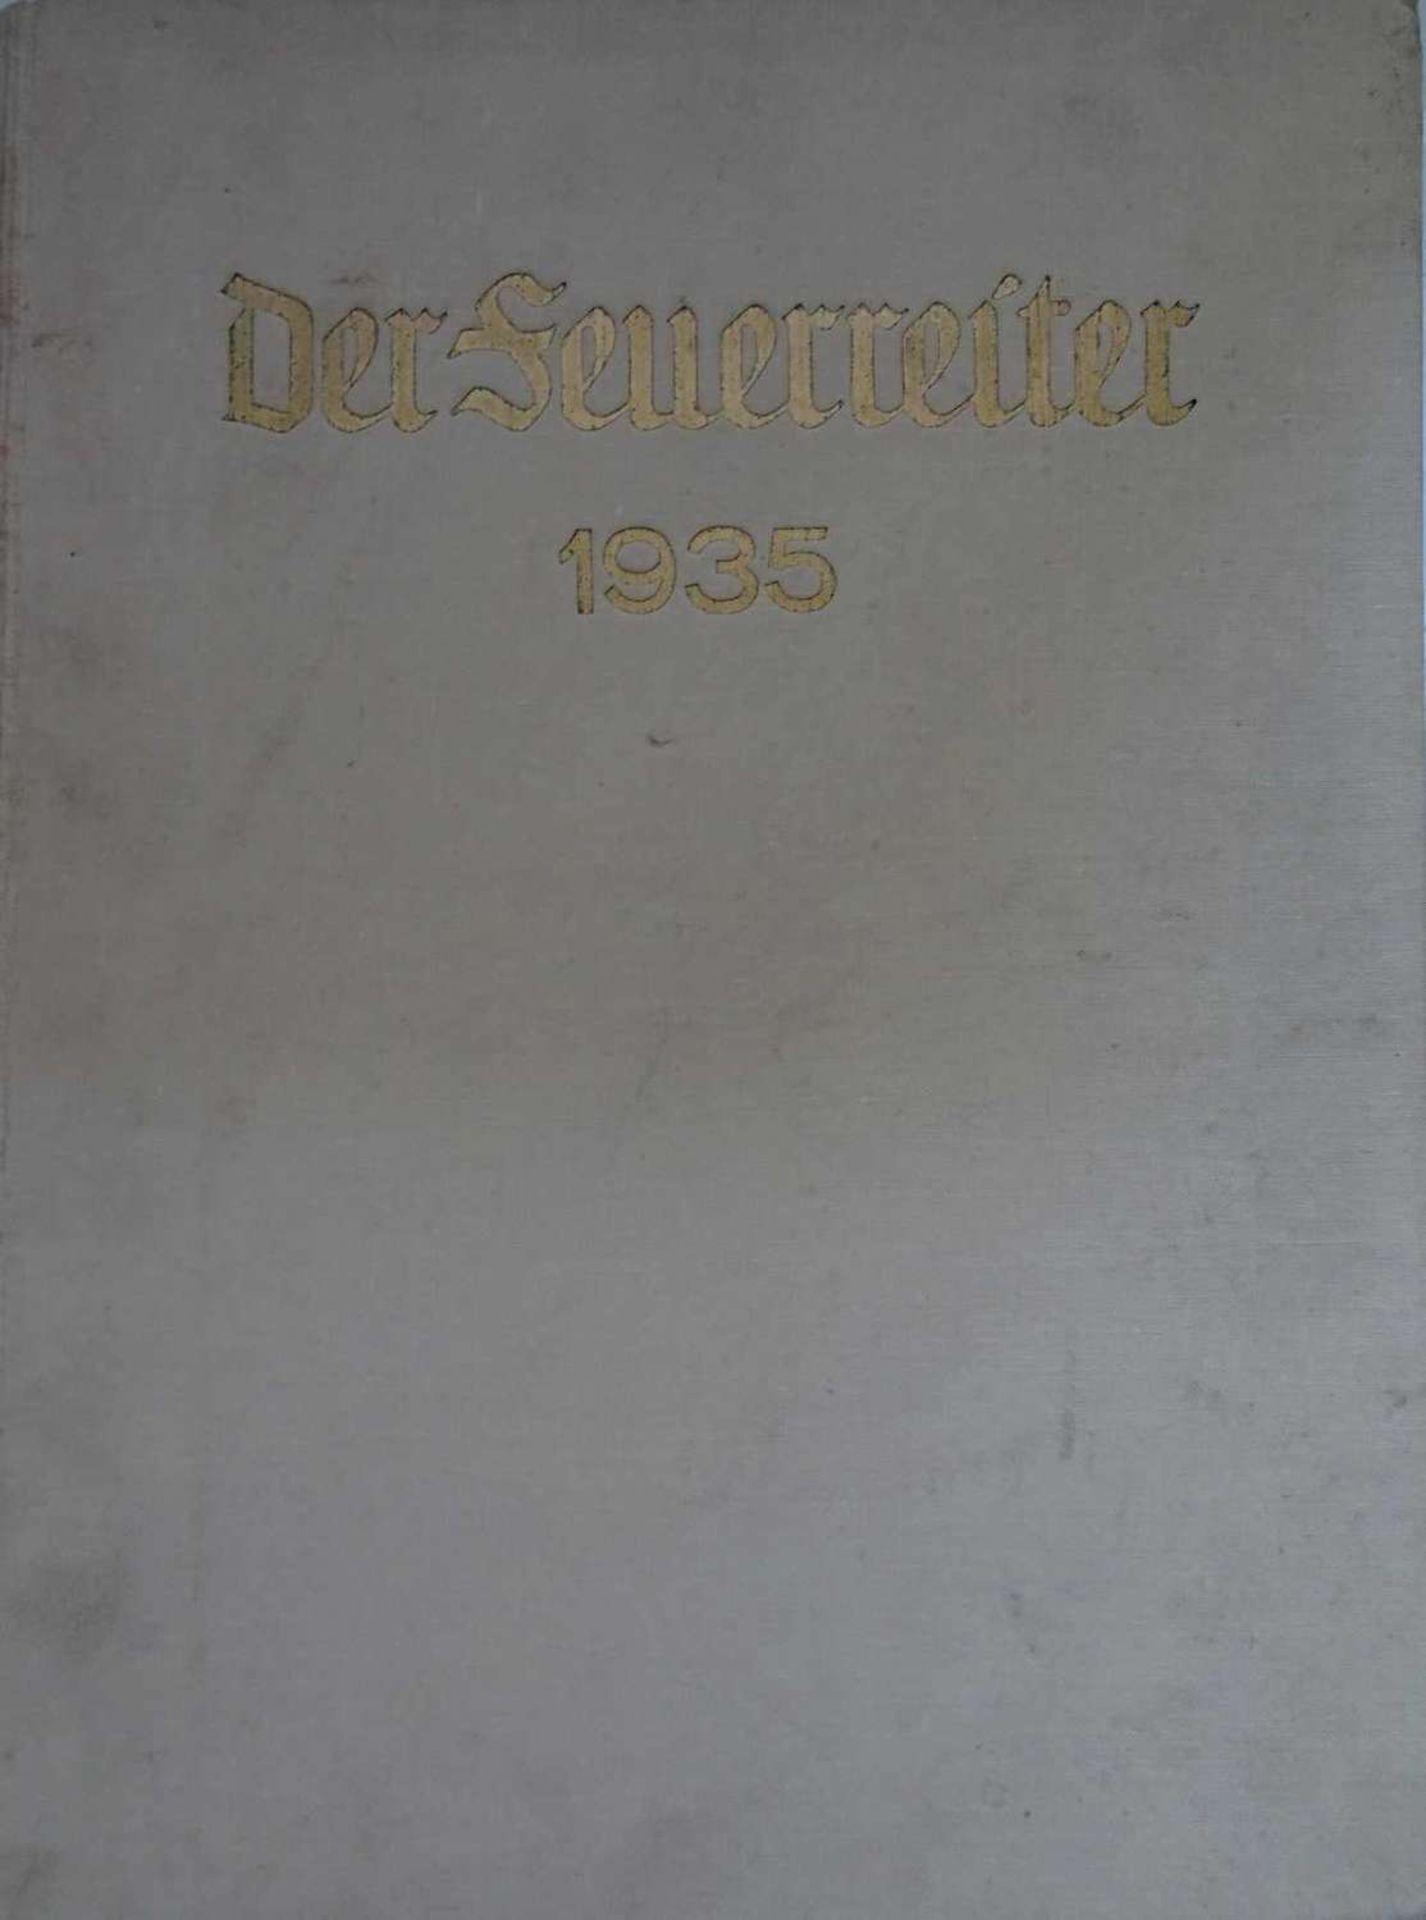 Der Feuerreiter 1935, 11. Jahrgang, Köln 5. Januar 1935 - 28. Dezember 1935. Gebunden. Der